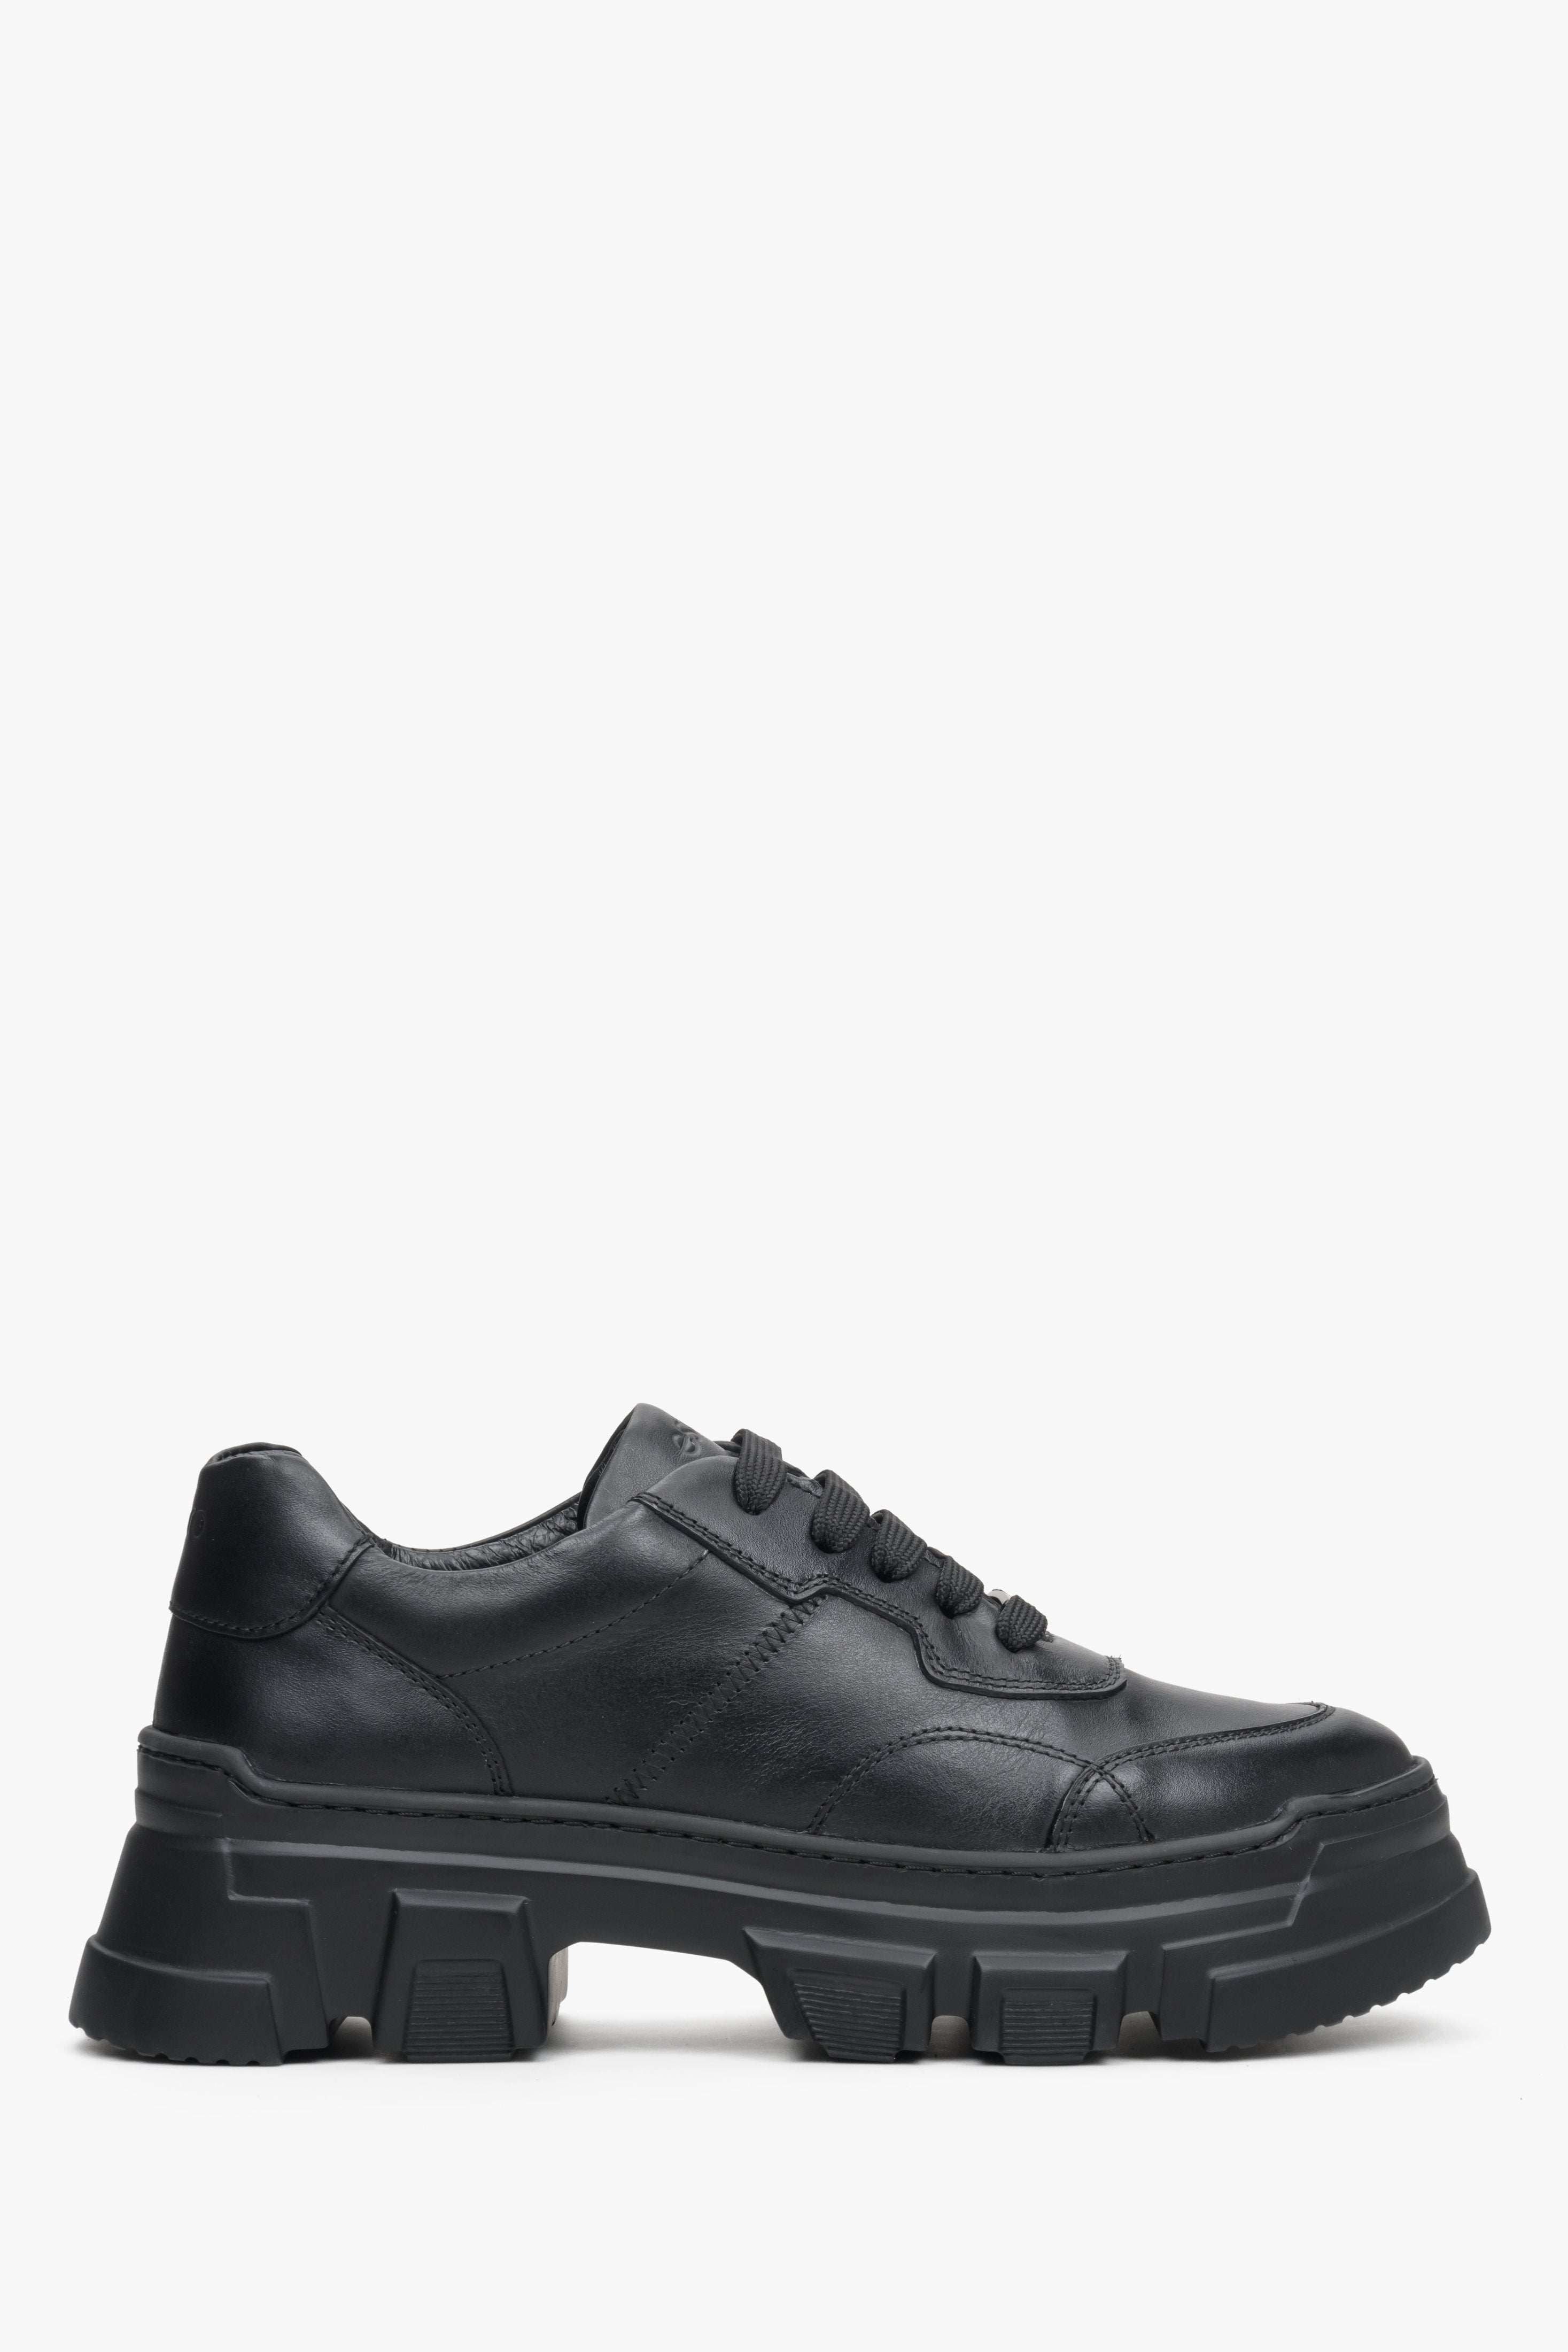 Czarne skórzane sneakersy damskie na masywnej podeszwie Estro ER00113362